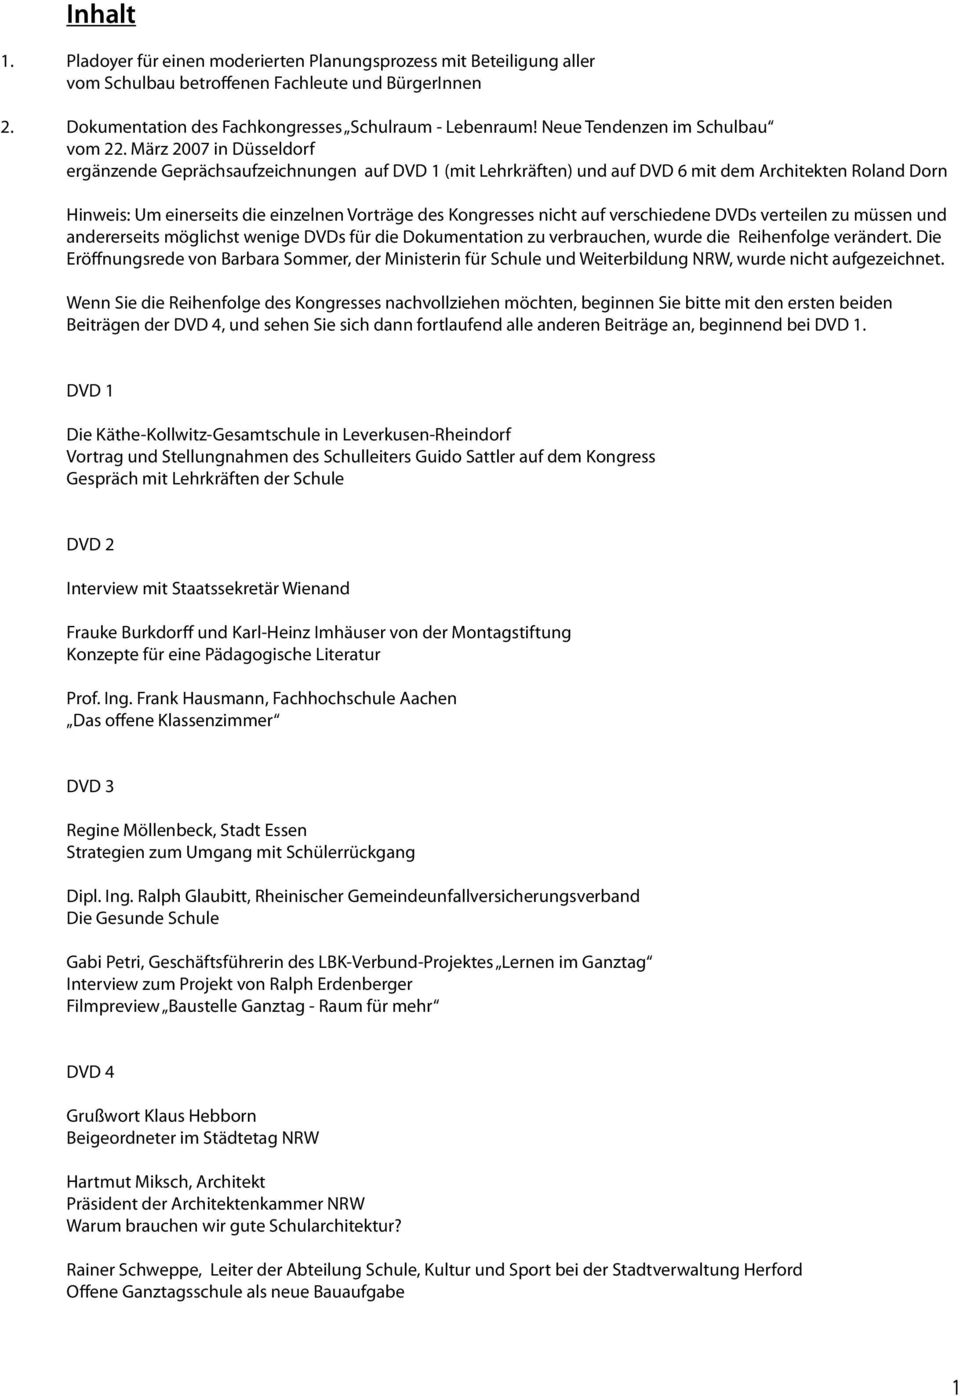 März 2007 in Düsseldorf ergänzende Geprächsaufzeichnungen auf DVD 1 (mit Lehrkräften) und auf DVD 6 mit dem Architekten Roland Dorn Hinweis: Um einerseits die einzelnen Vorträge des Kongresses nicht